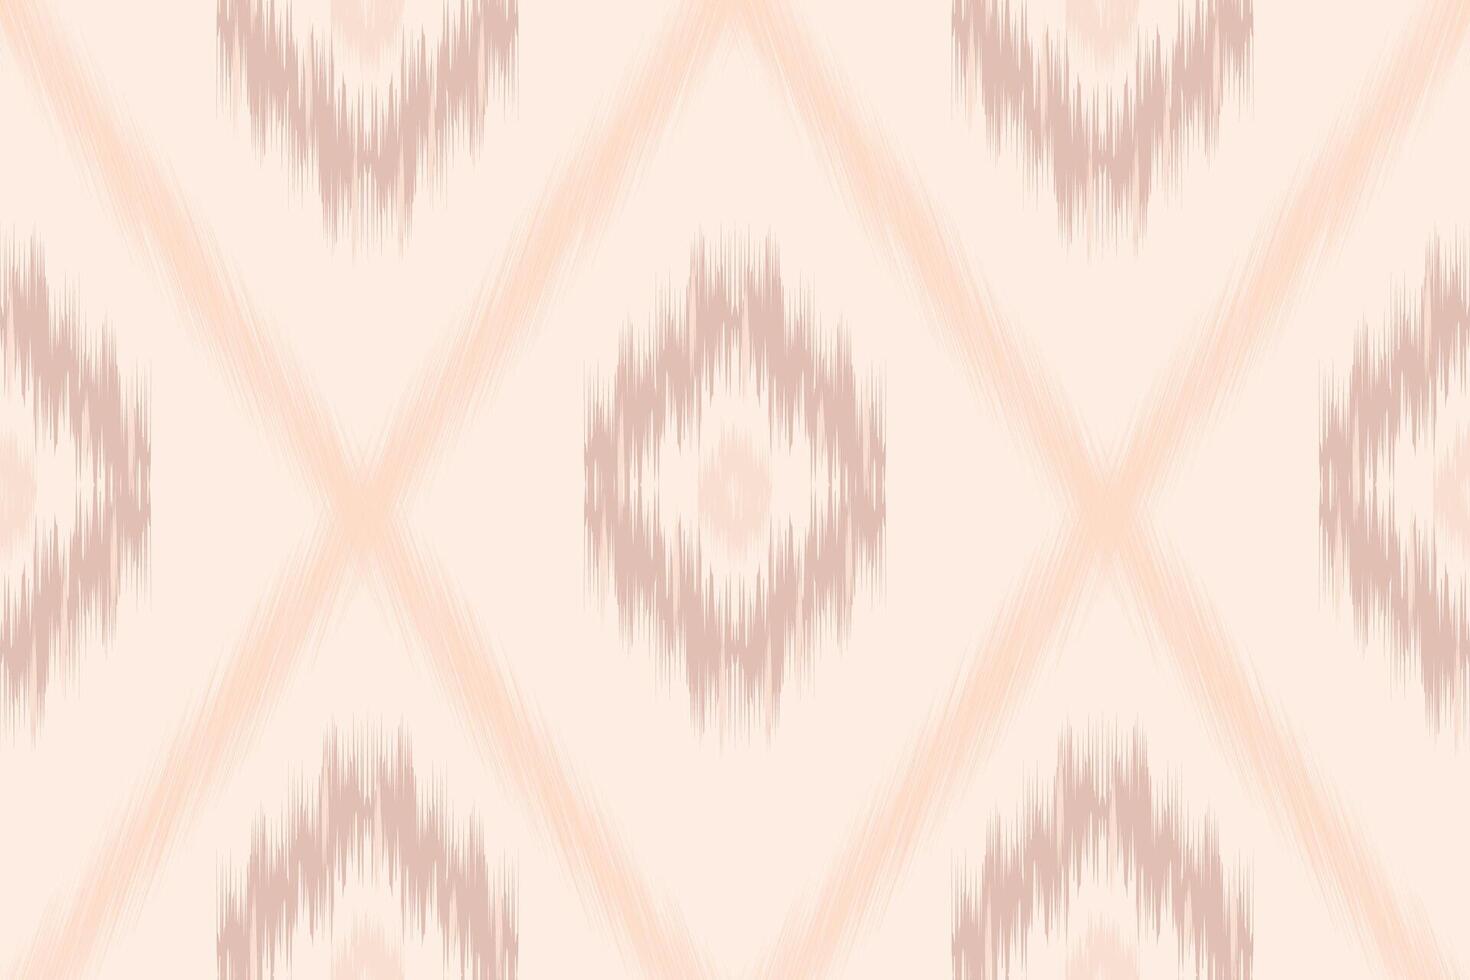 tecido ikat desatado padronizar geométrico étnico tradicional bordado estilo.design para tapete, tapete, sarongue, roupas. padrão imperfeita mas lindo. vetor ilustração.